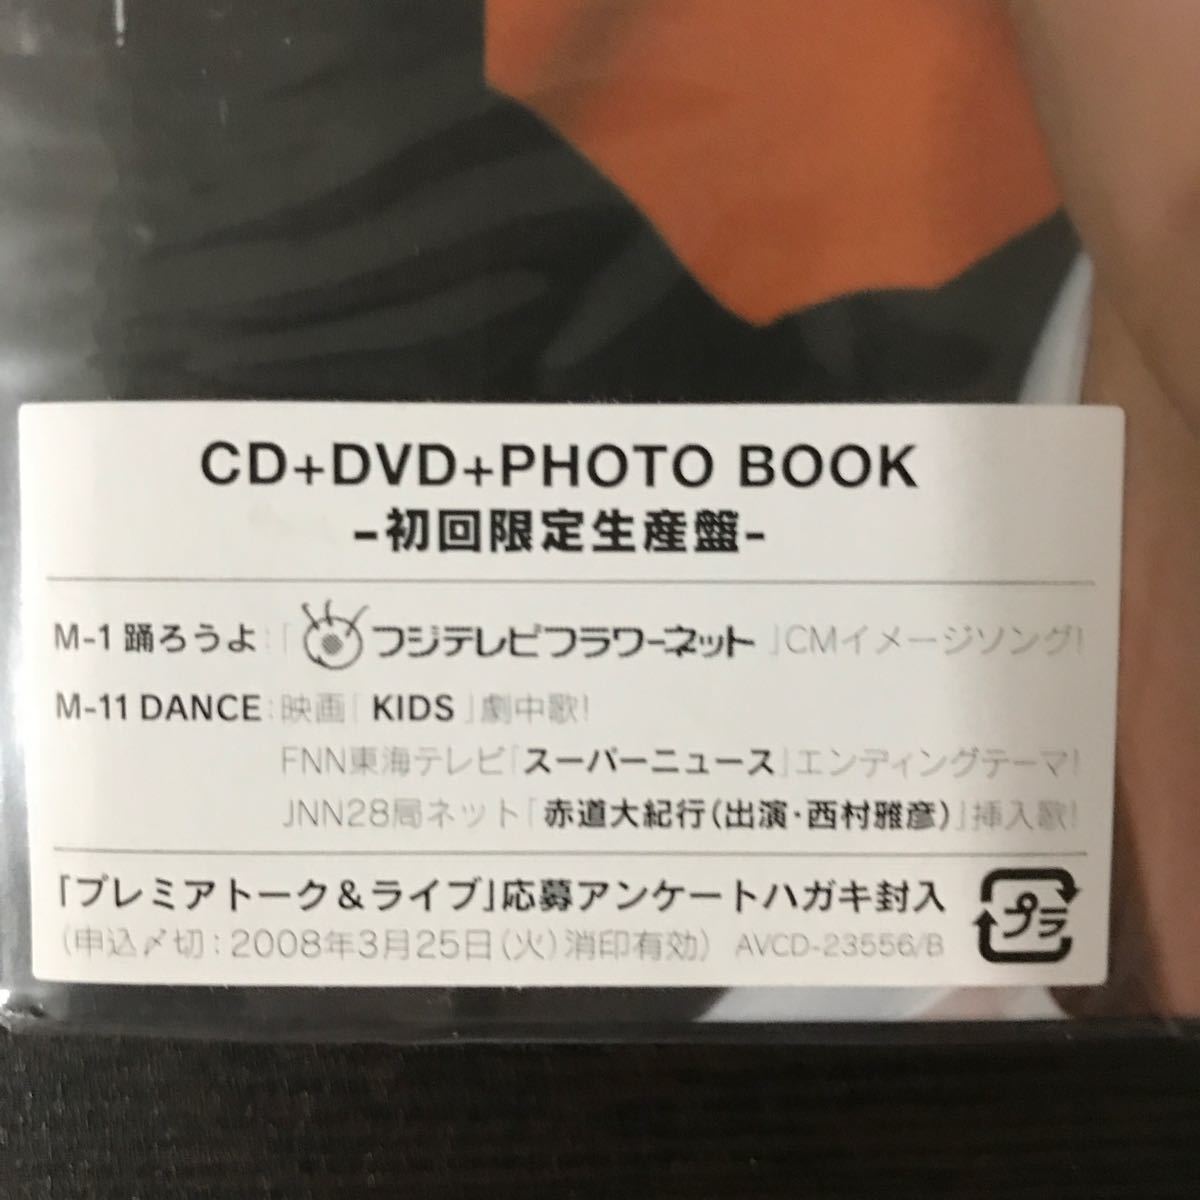 玉木宏 『Bridge 《初回限定生産盤》 《CD+DVD+PHOTO BOOK》』送料込み